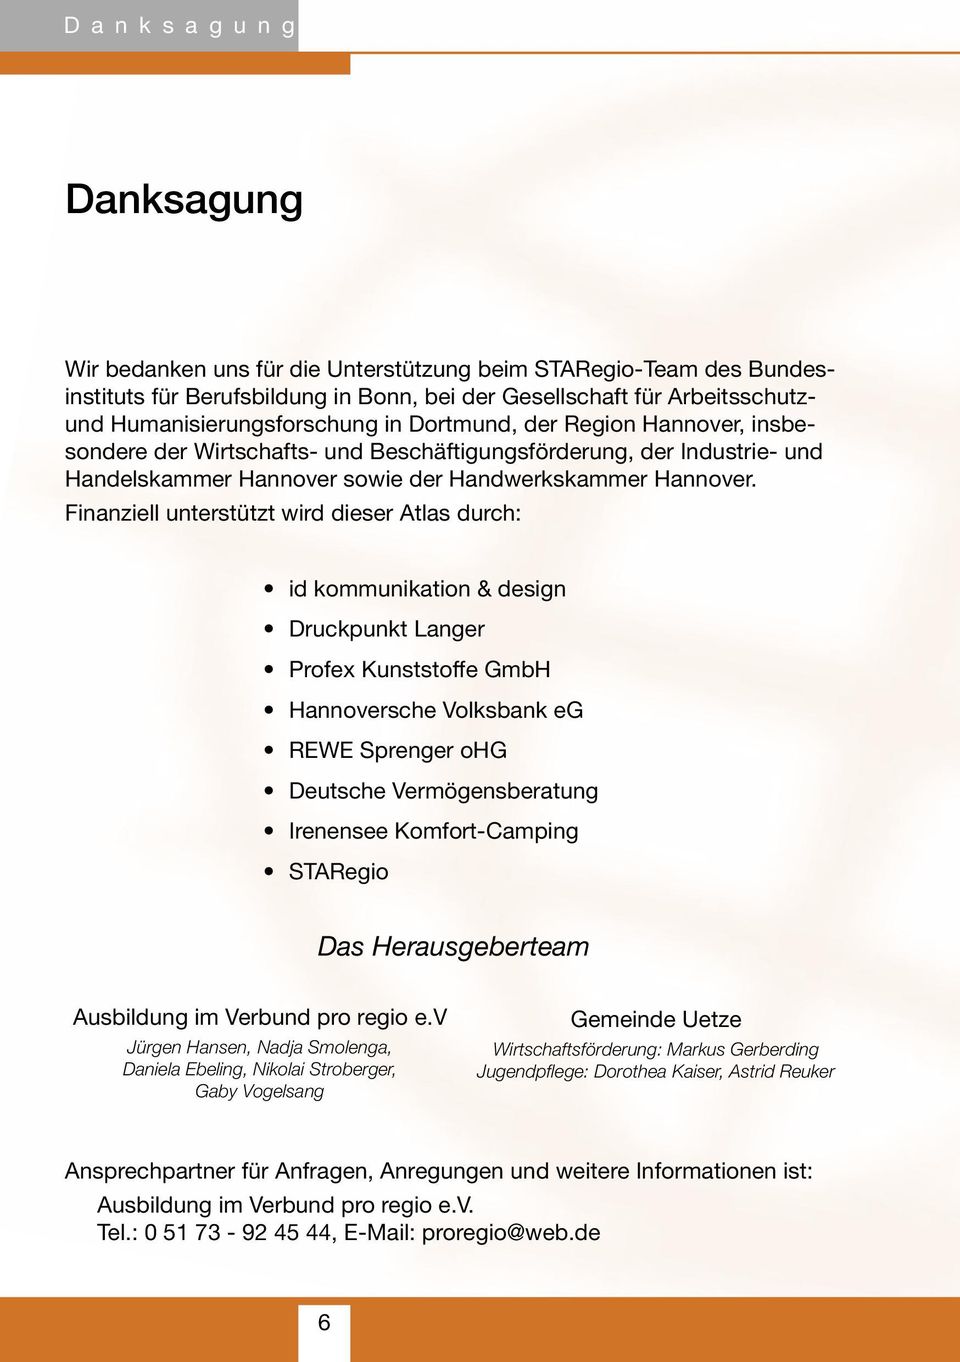 Finanziell unterstützt wird dieser Atlas durch: id kommunikation & design Druckpunkt Langer Profex Kunststoffe GmbH Hannoversche Volksbank eg REWE Sprenger ohg Deutsche Vermögensberatung Irenensee